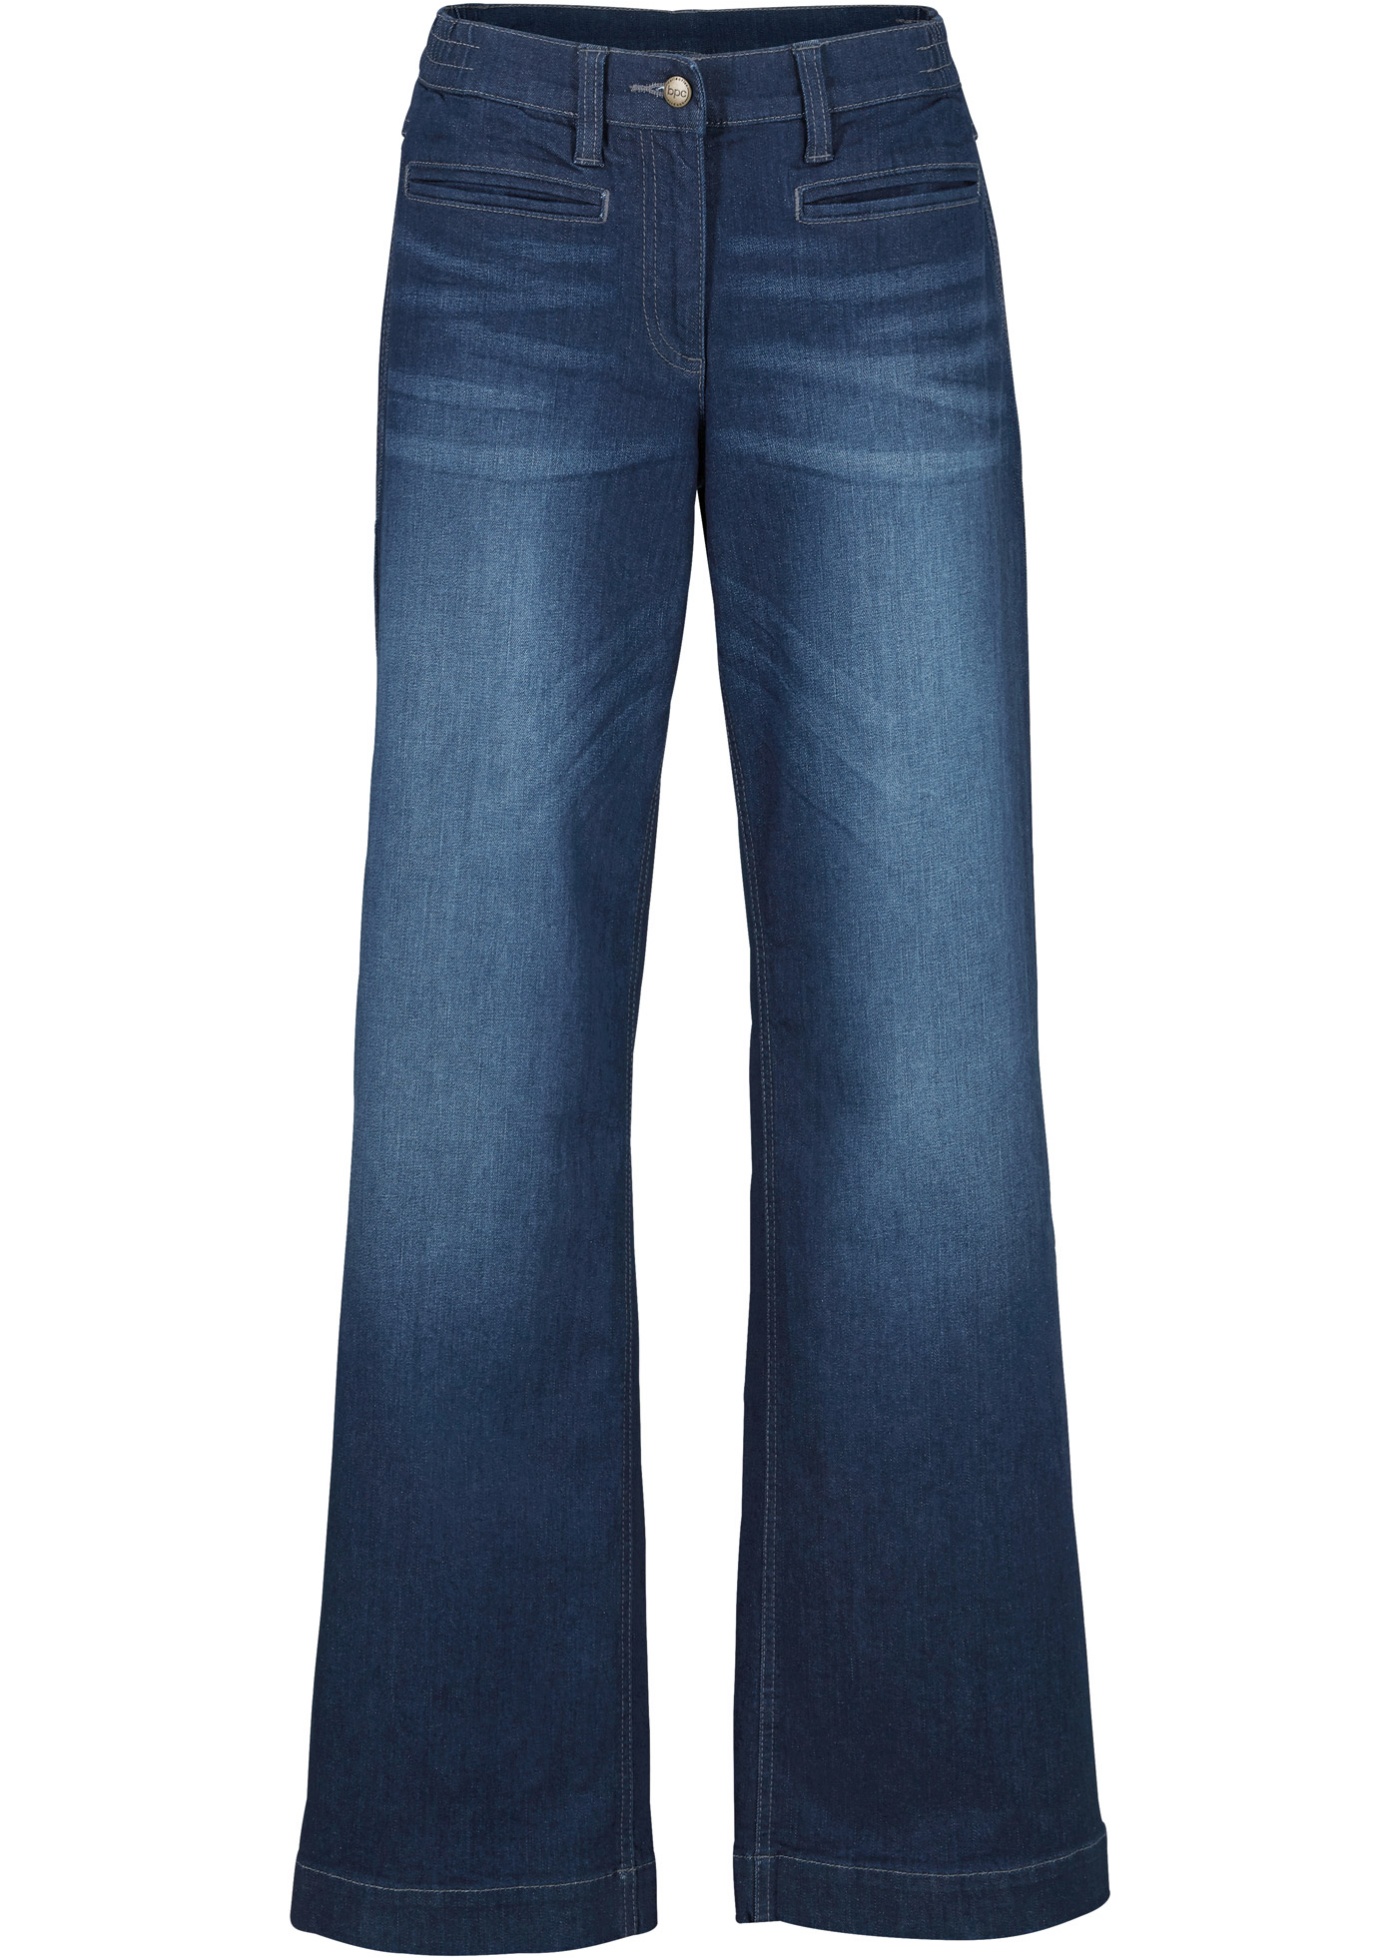 jean coton avec taille confortable, style marlène